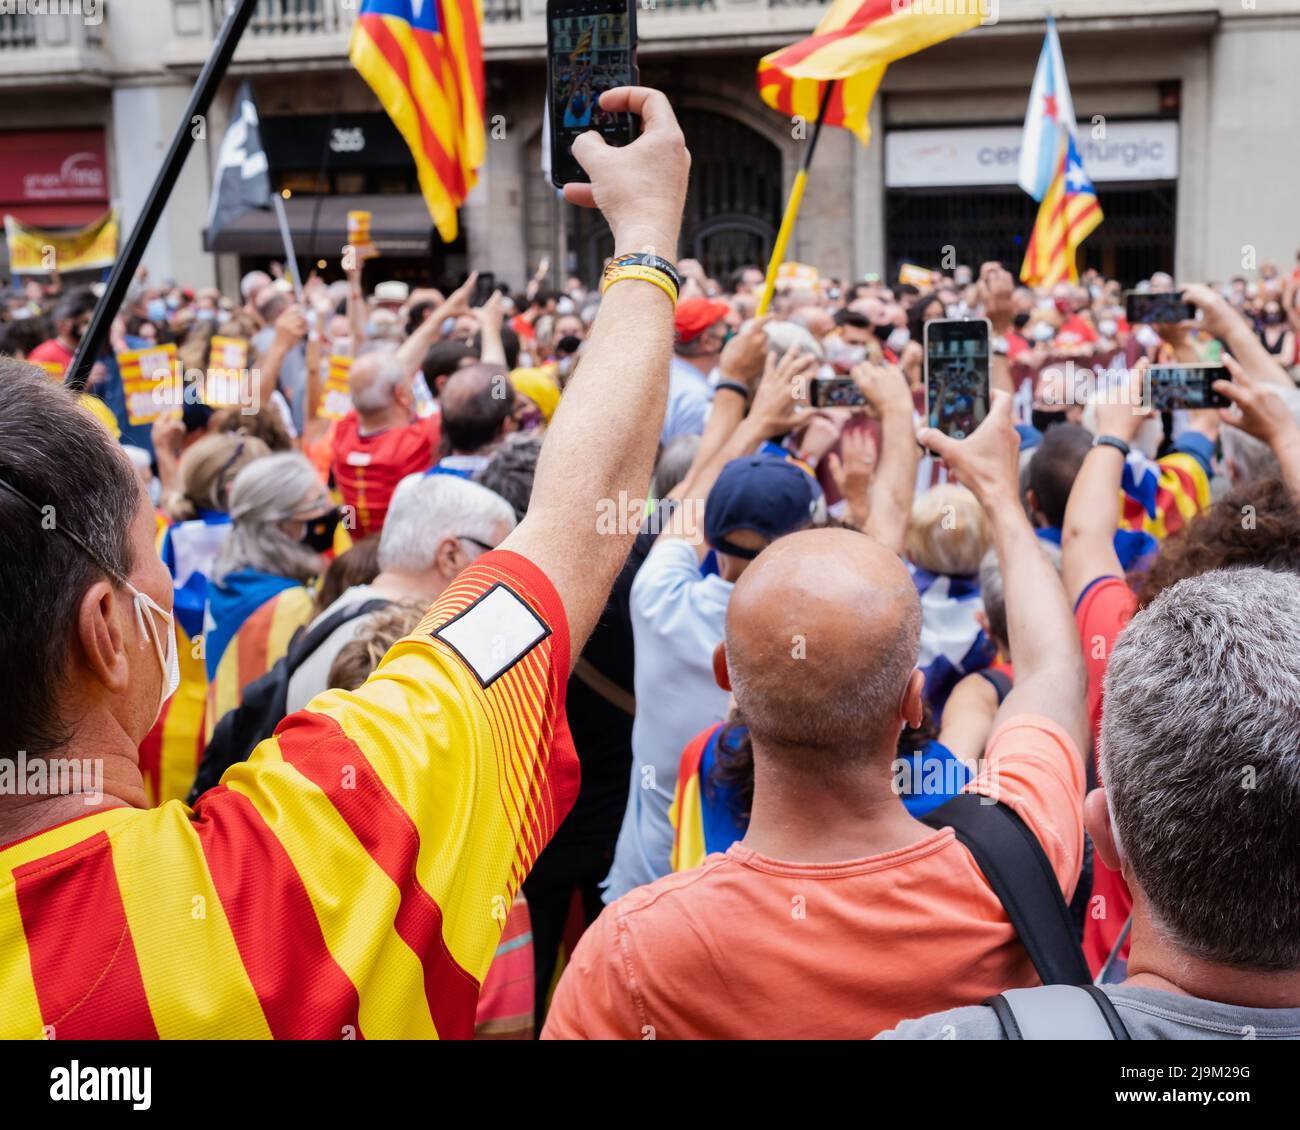 Barcelona, Katalonien, Spanien 09-11-2021: Nationaler Tag Kataloniens, besser bekannt als Diada. Menschen, die während der Veranstaltung Fotos machen. Stockfoto